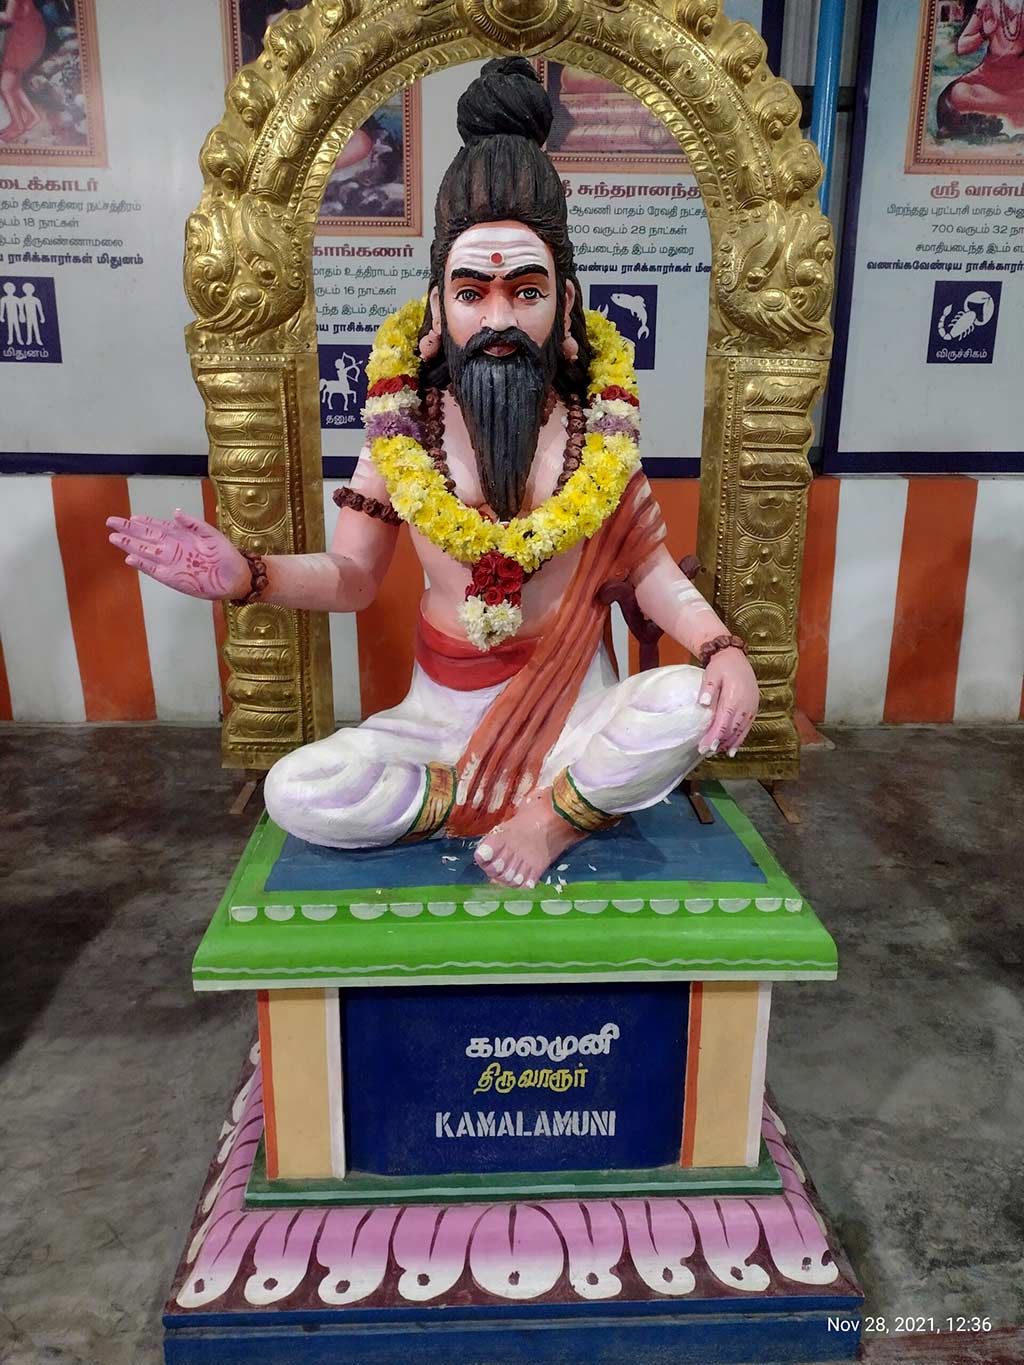 Maharishi Kamalamuni at a temple in Tamil Nadu